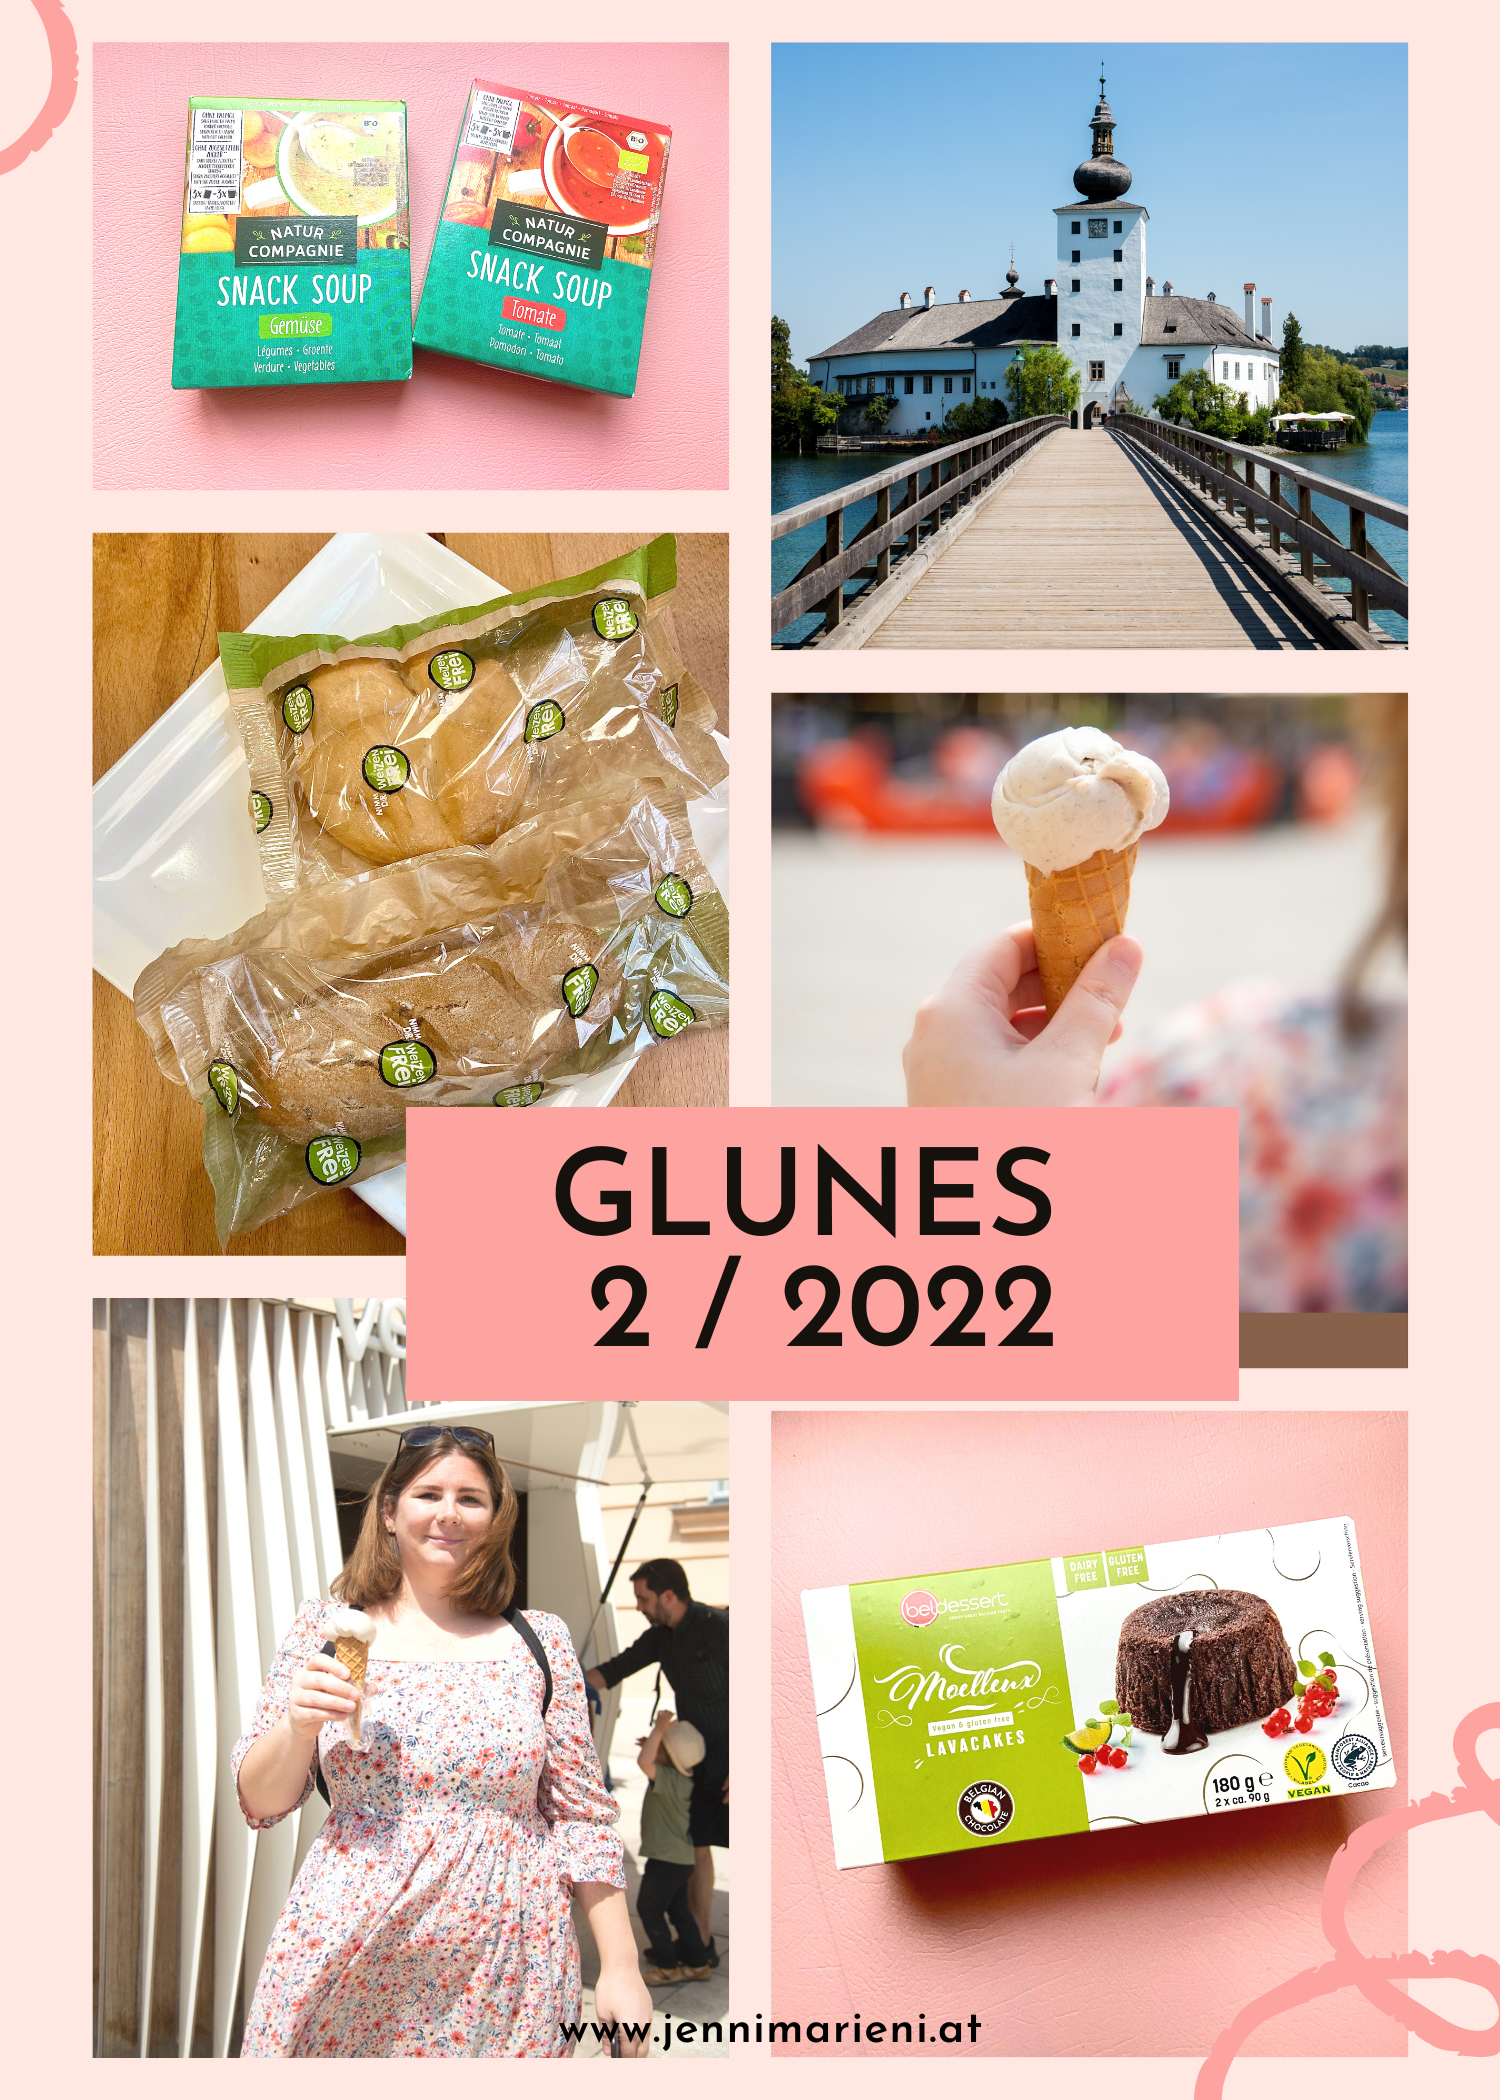 GLUNES Q2/2022: Glutenfreie Lava Cakes, ganz viel Wienliebe, ein tragischer Tod und unbeschwertes Reisen als Zöli